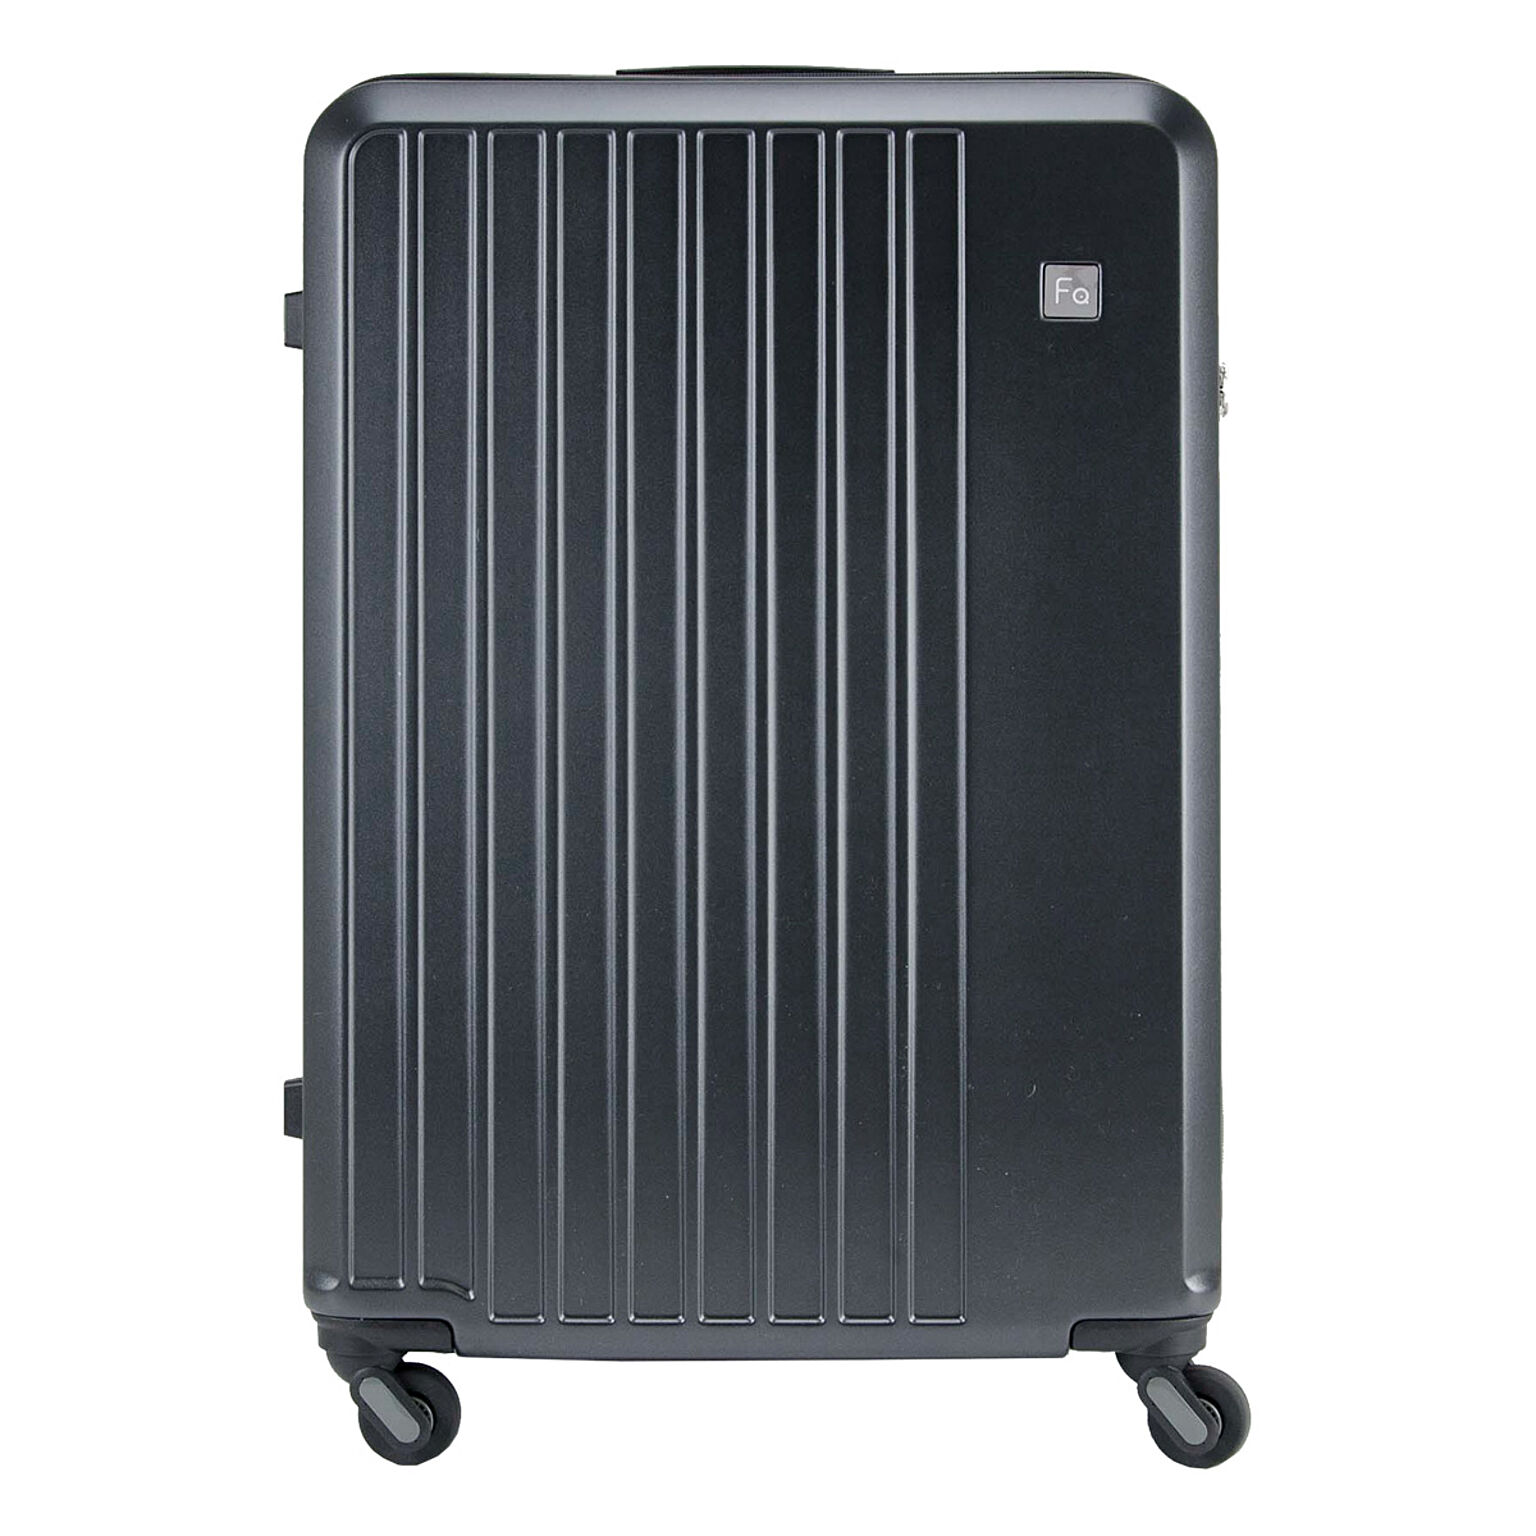 フリクエンター スーツケース 68.5cm 98L メンズ レディース 1-253 FREQUENTER LIEVE リエーヴェ 大容量 静音 軽量 消臭 抗菌 TSAロック 旅行 出張